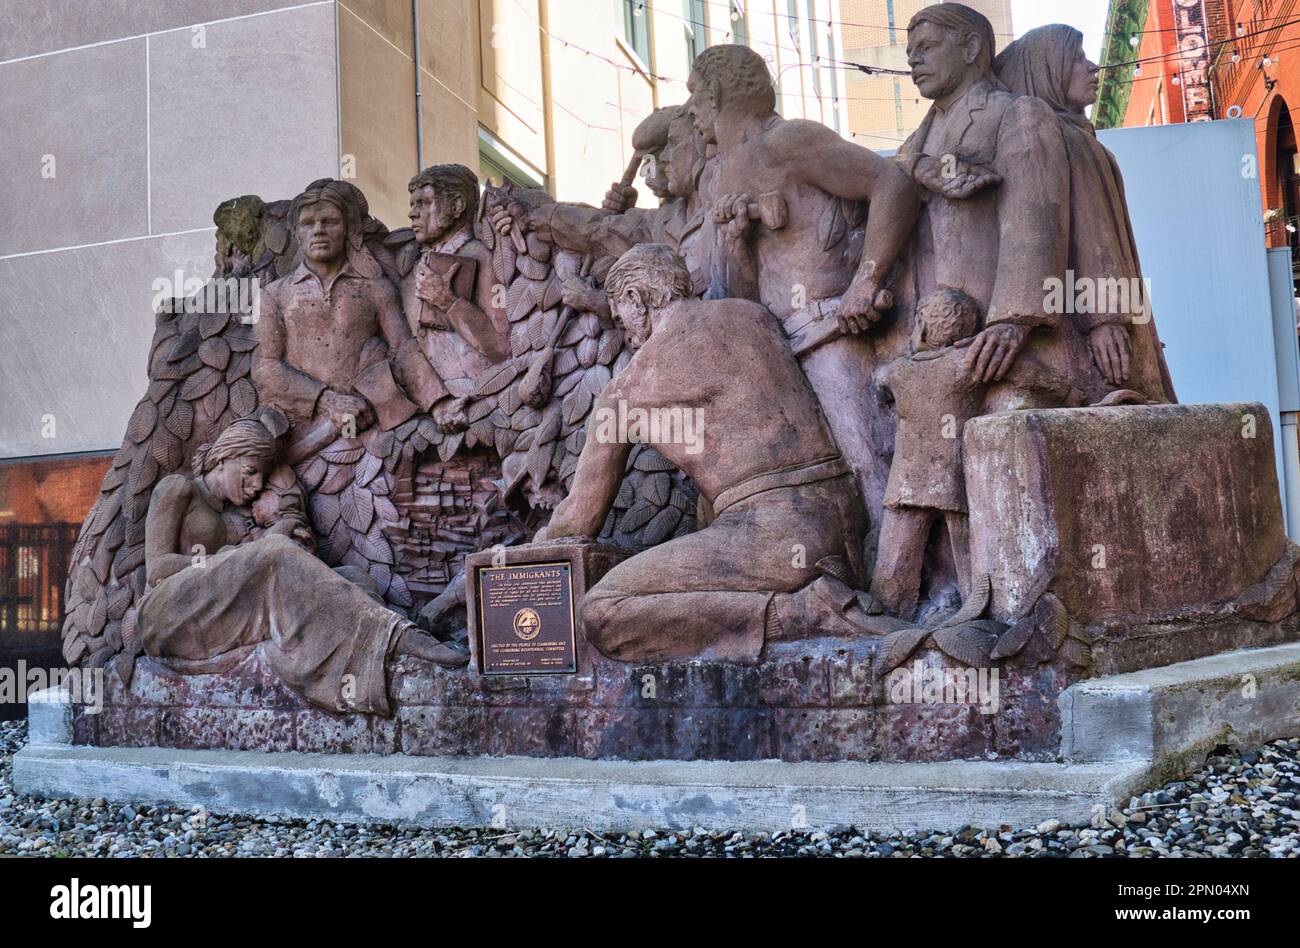 Die Einwandererstatue, die die vielfältige Zusammensetzung der Bevölkerung in und um Clarksburg darstellt, wurde auf dem Courthouse plaza eine Statue errichtet. Stockfoto